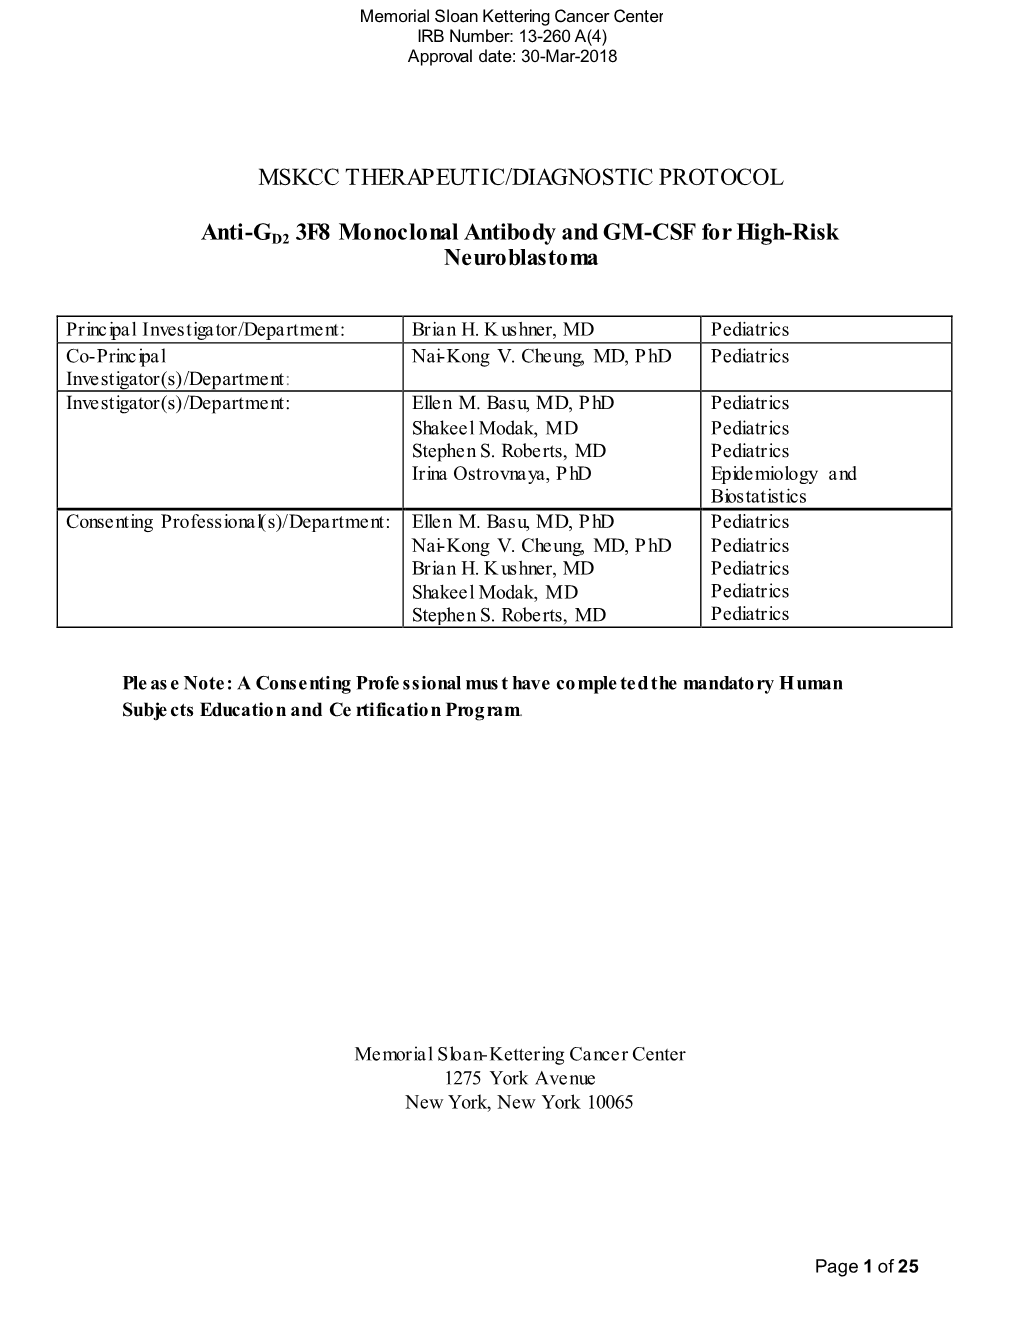 Mskcc Therapeutic/Diagnostic Protocol